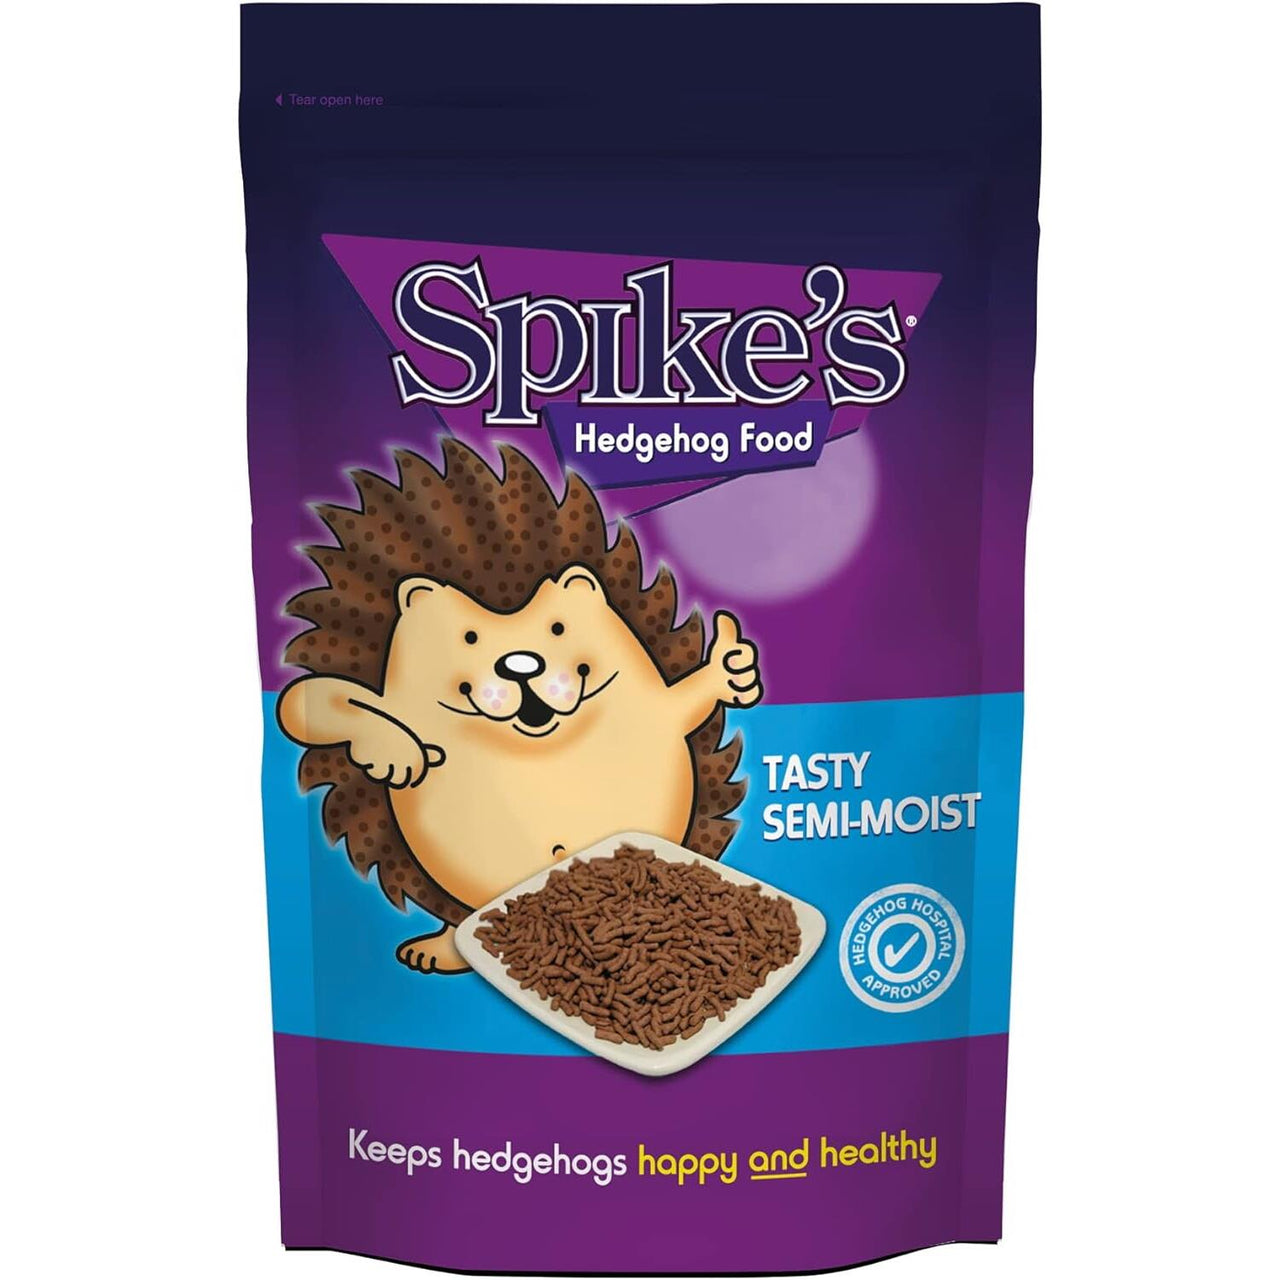 Spikes - Tasty Semi-Moist Hedgehog Food, 550g Pack